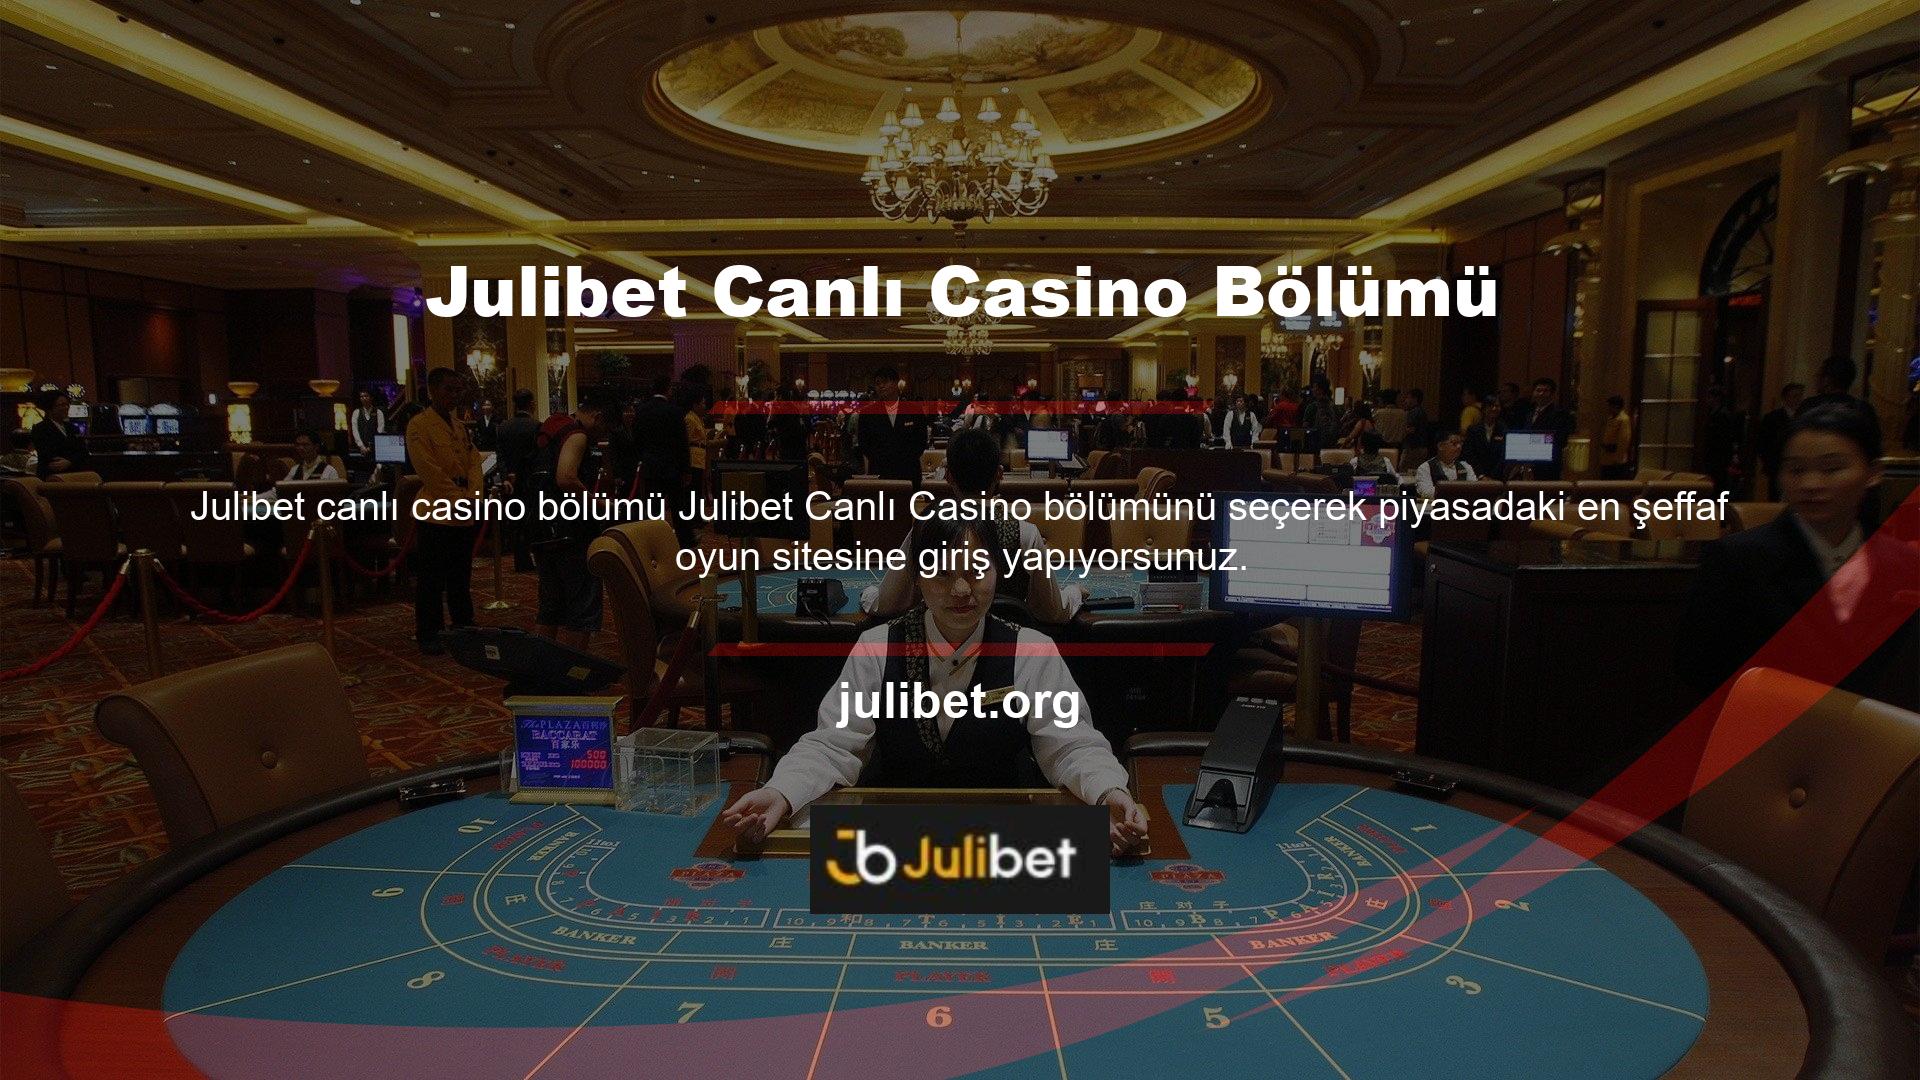 Julibet Canlı Casino'da Hile mi Yapıyor? Böyle bir talepte bulunulmadı